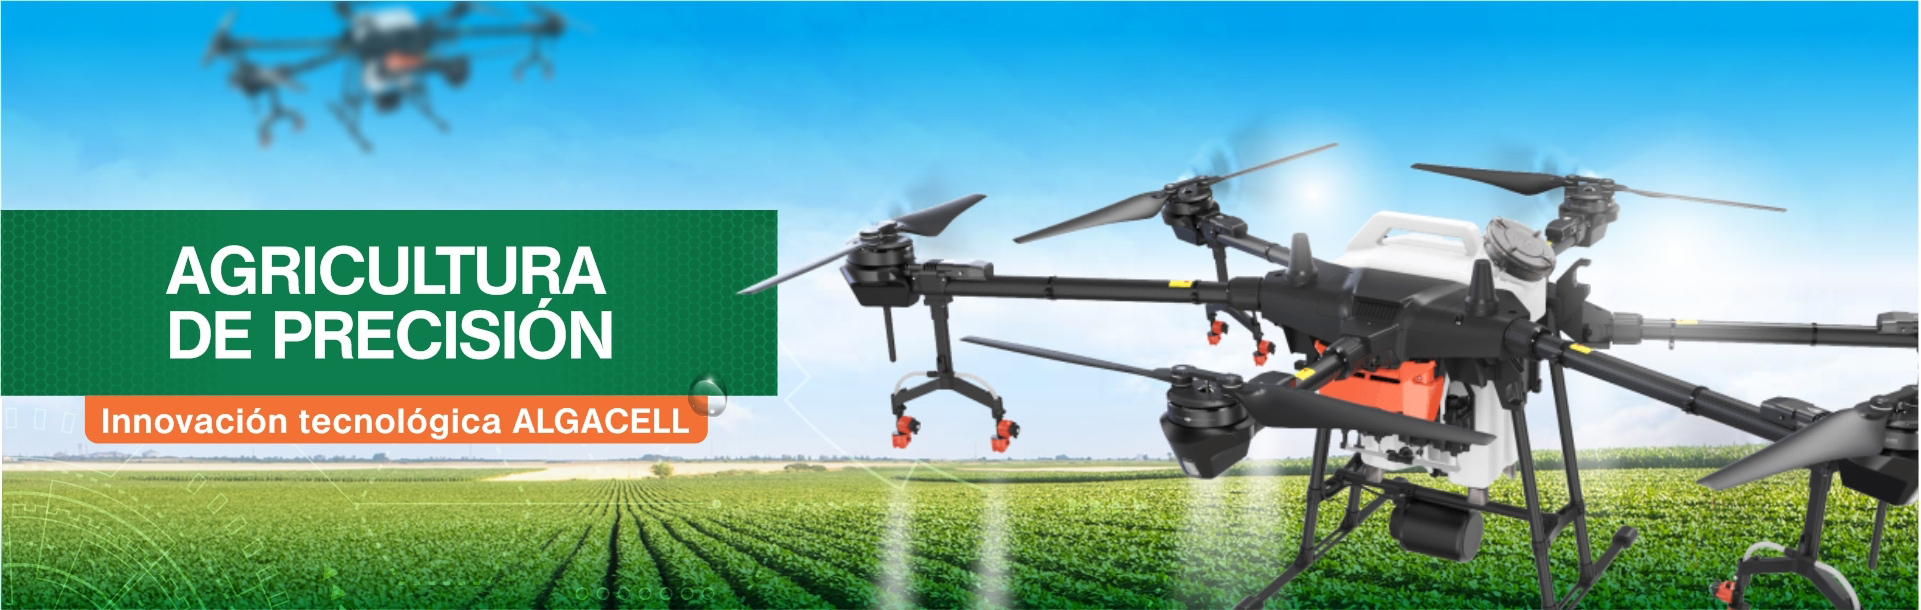 Agricultura-de-precisin-innovacin-riego-algacell-dron2